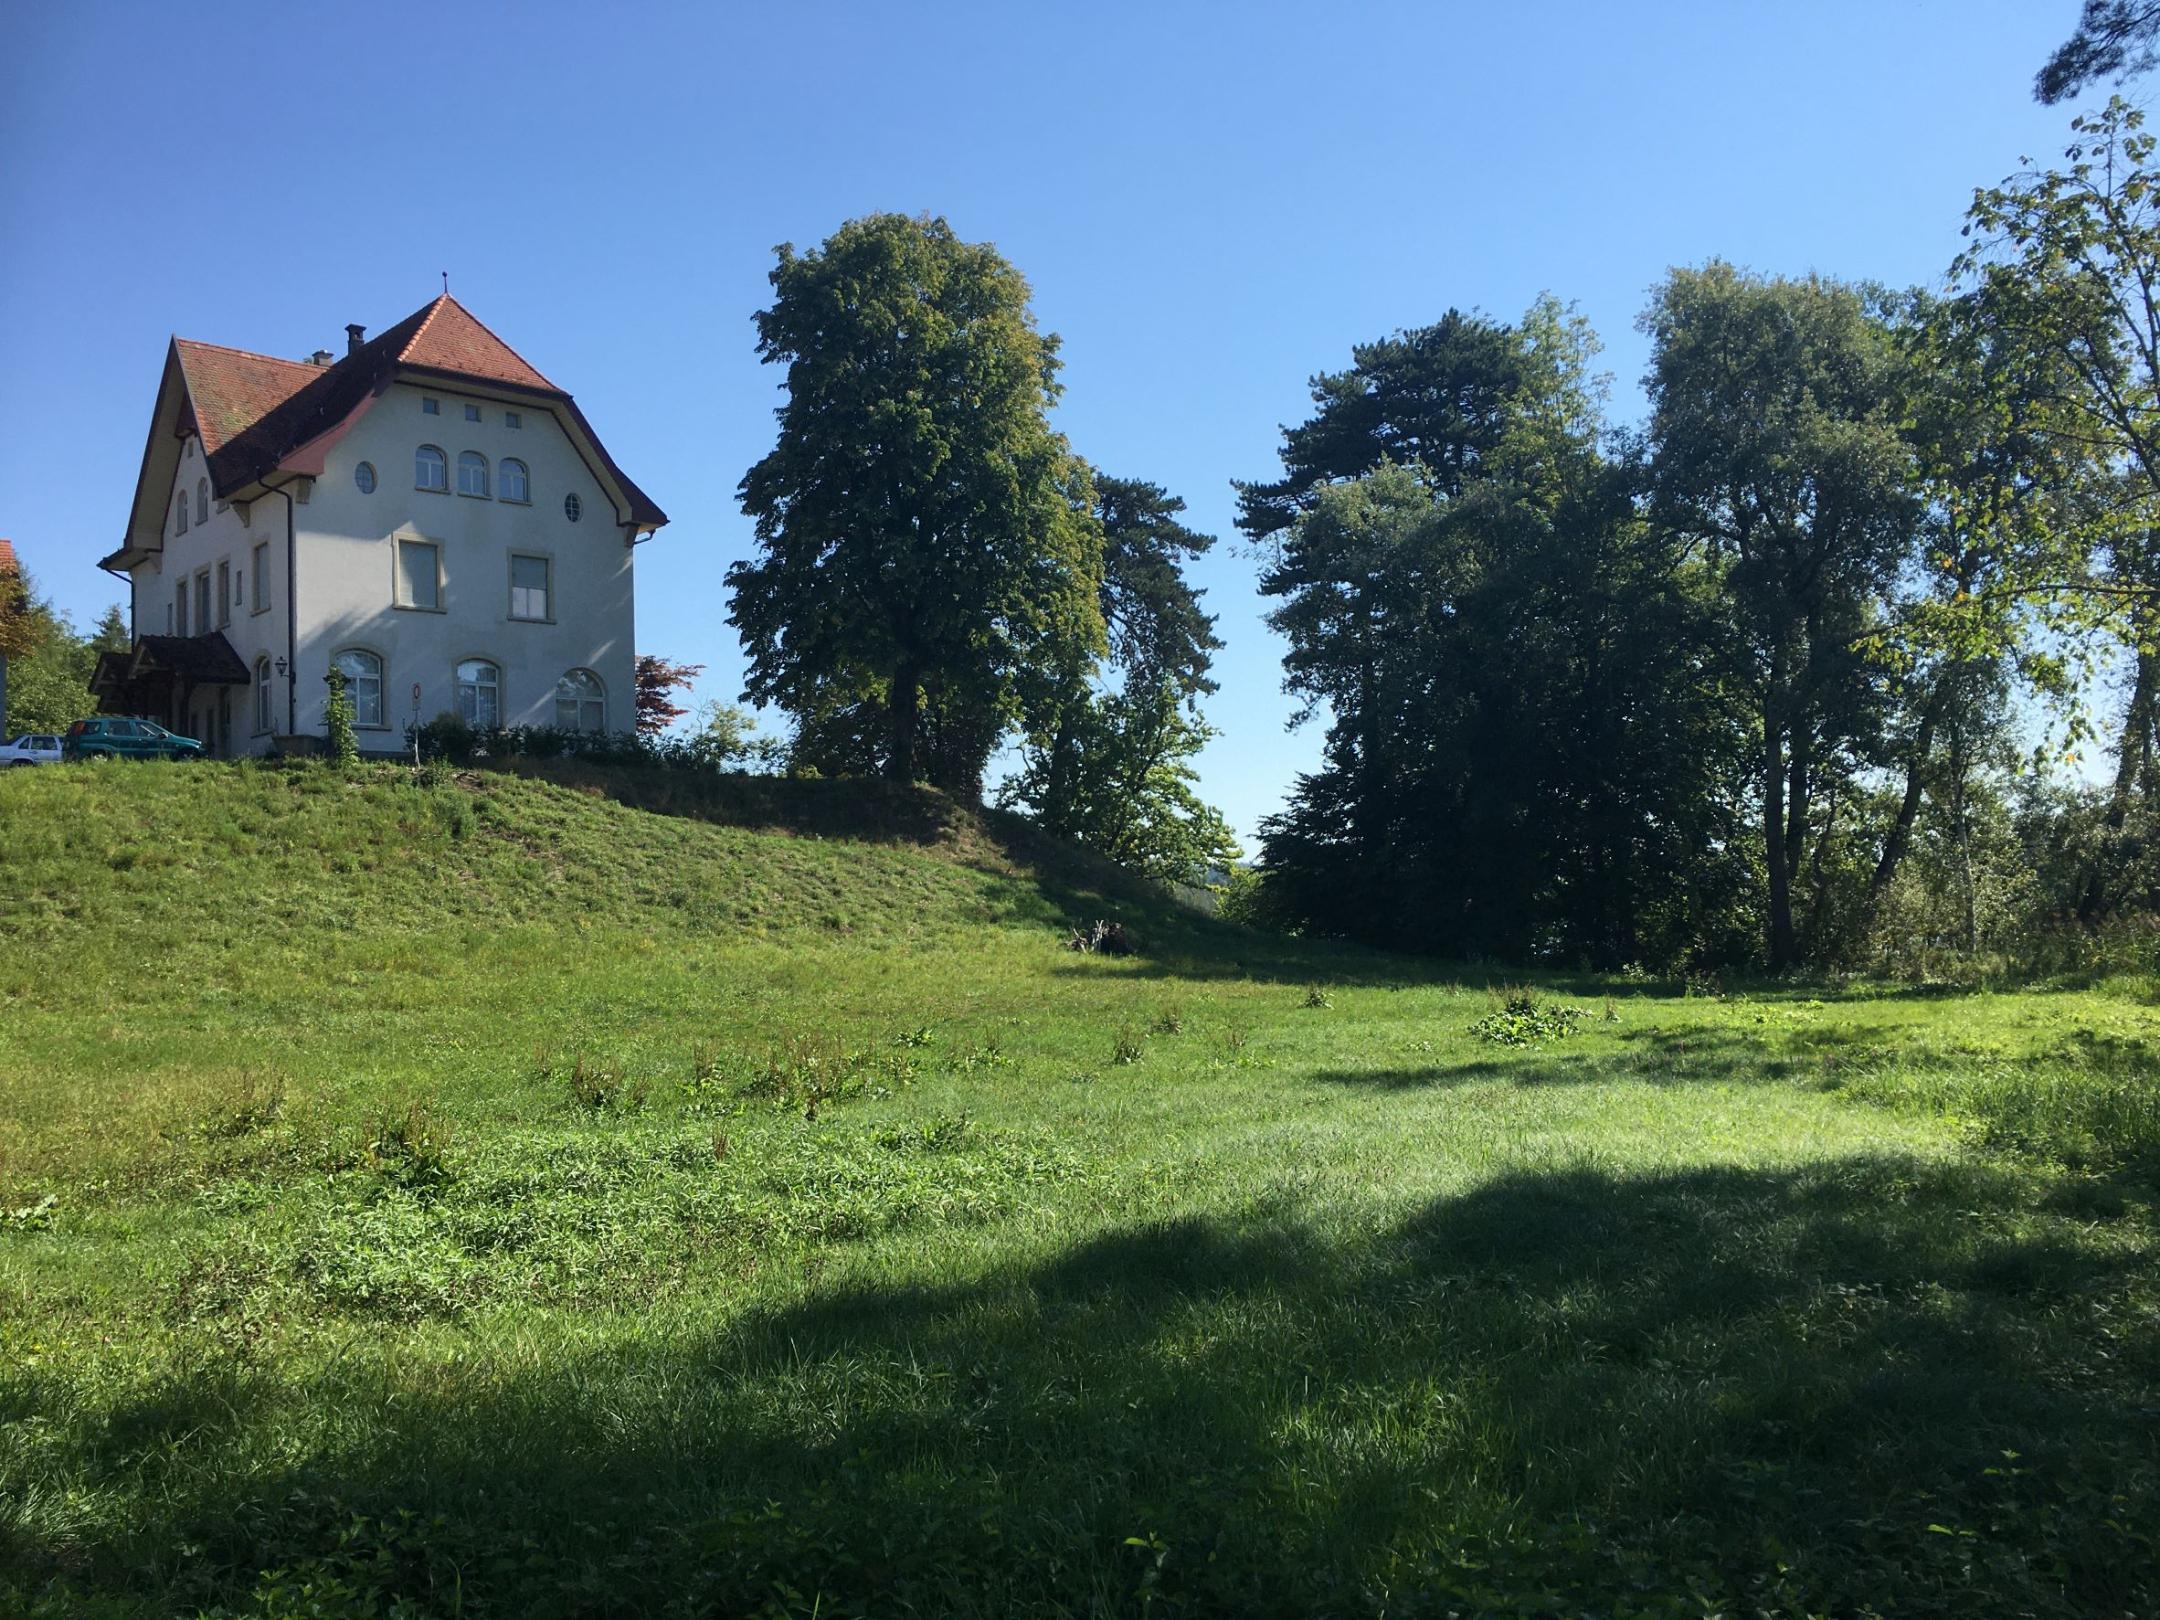 Haus auf der Kuppe eines grasbewachsenen Hügels